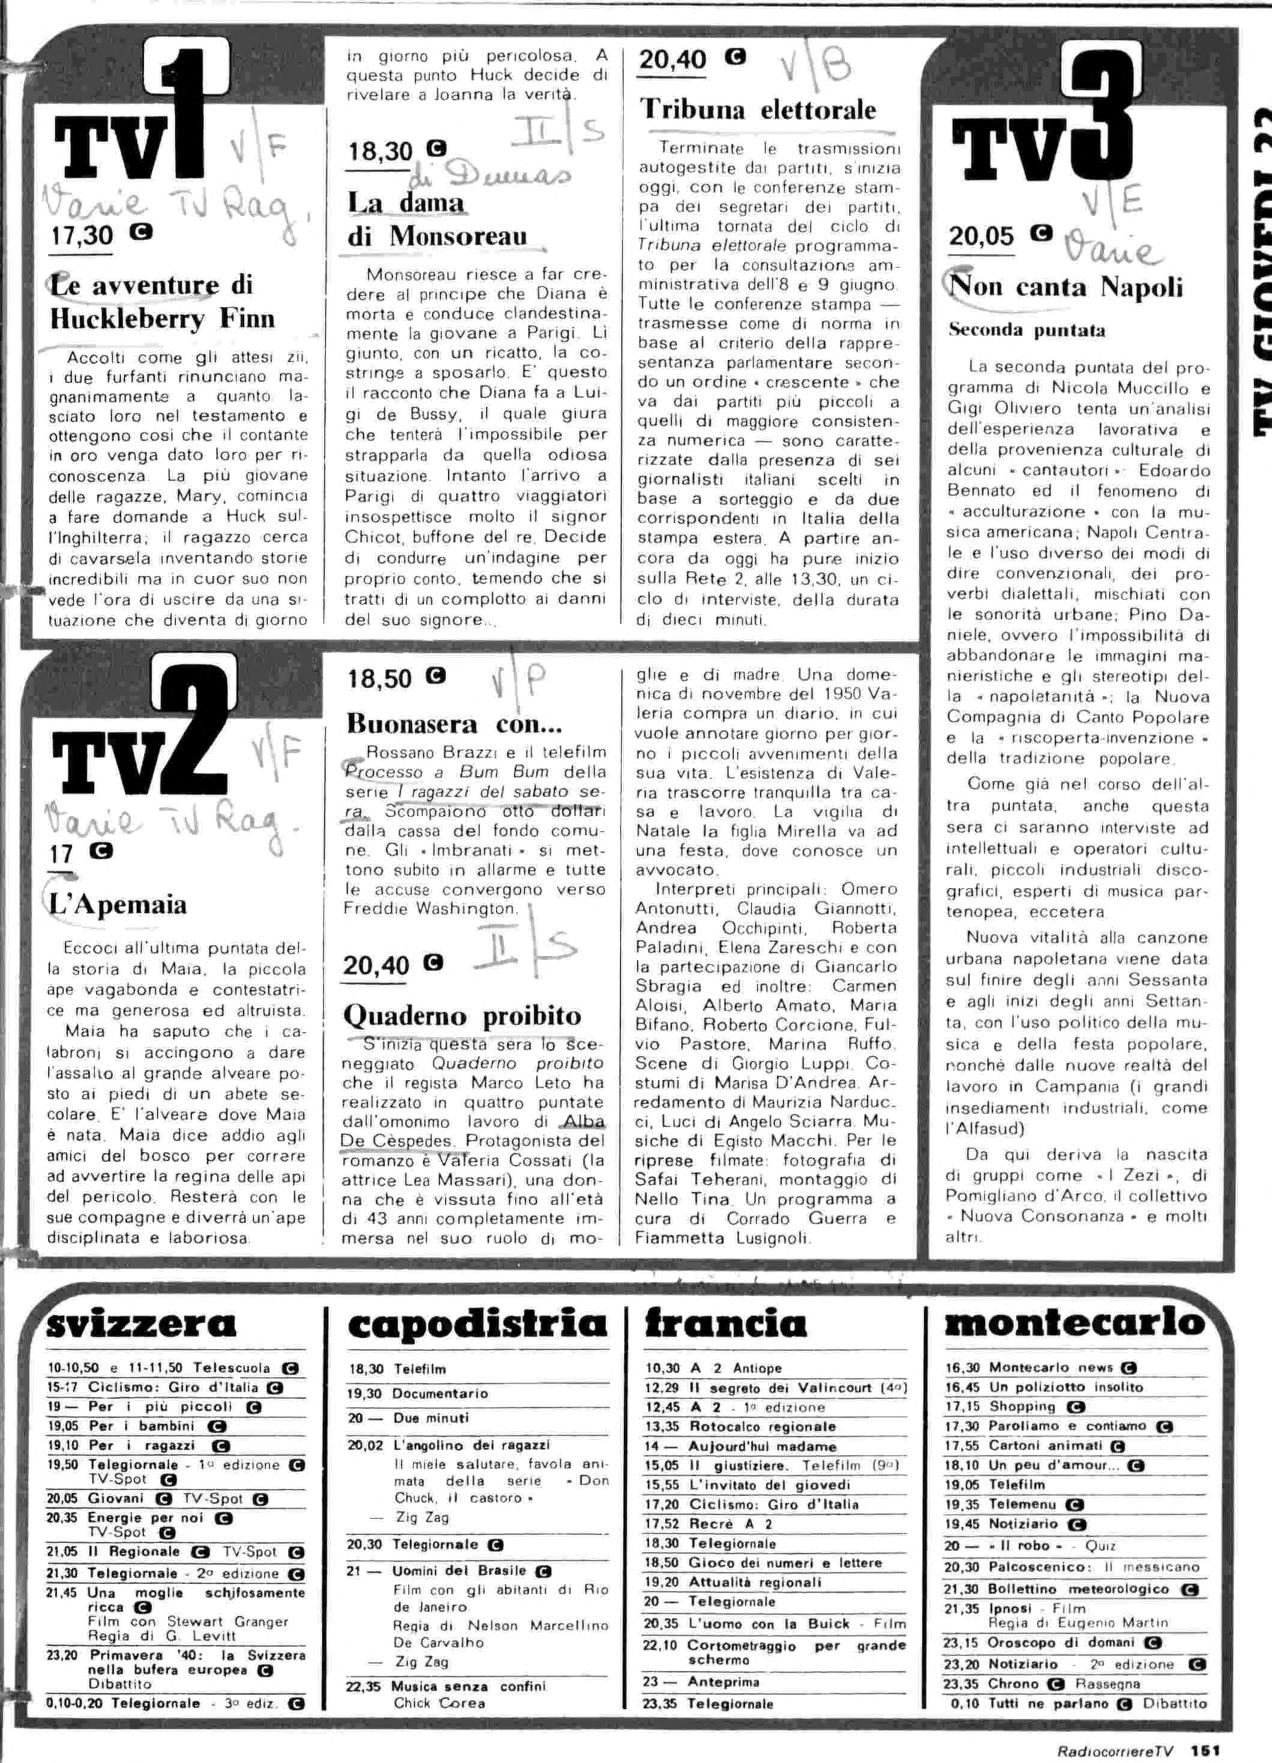 RC-1980-21_0150.jp2&id=Radiocorriere-198